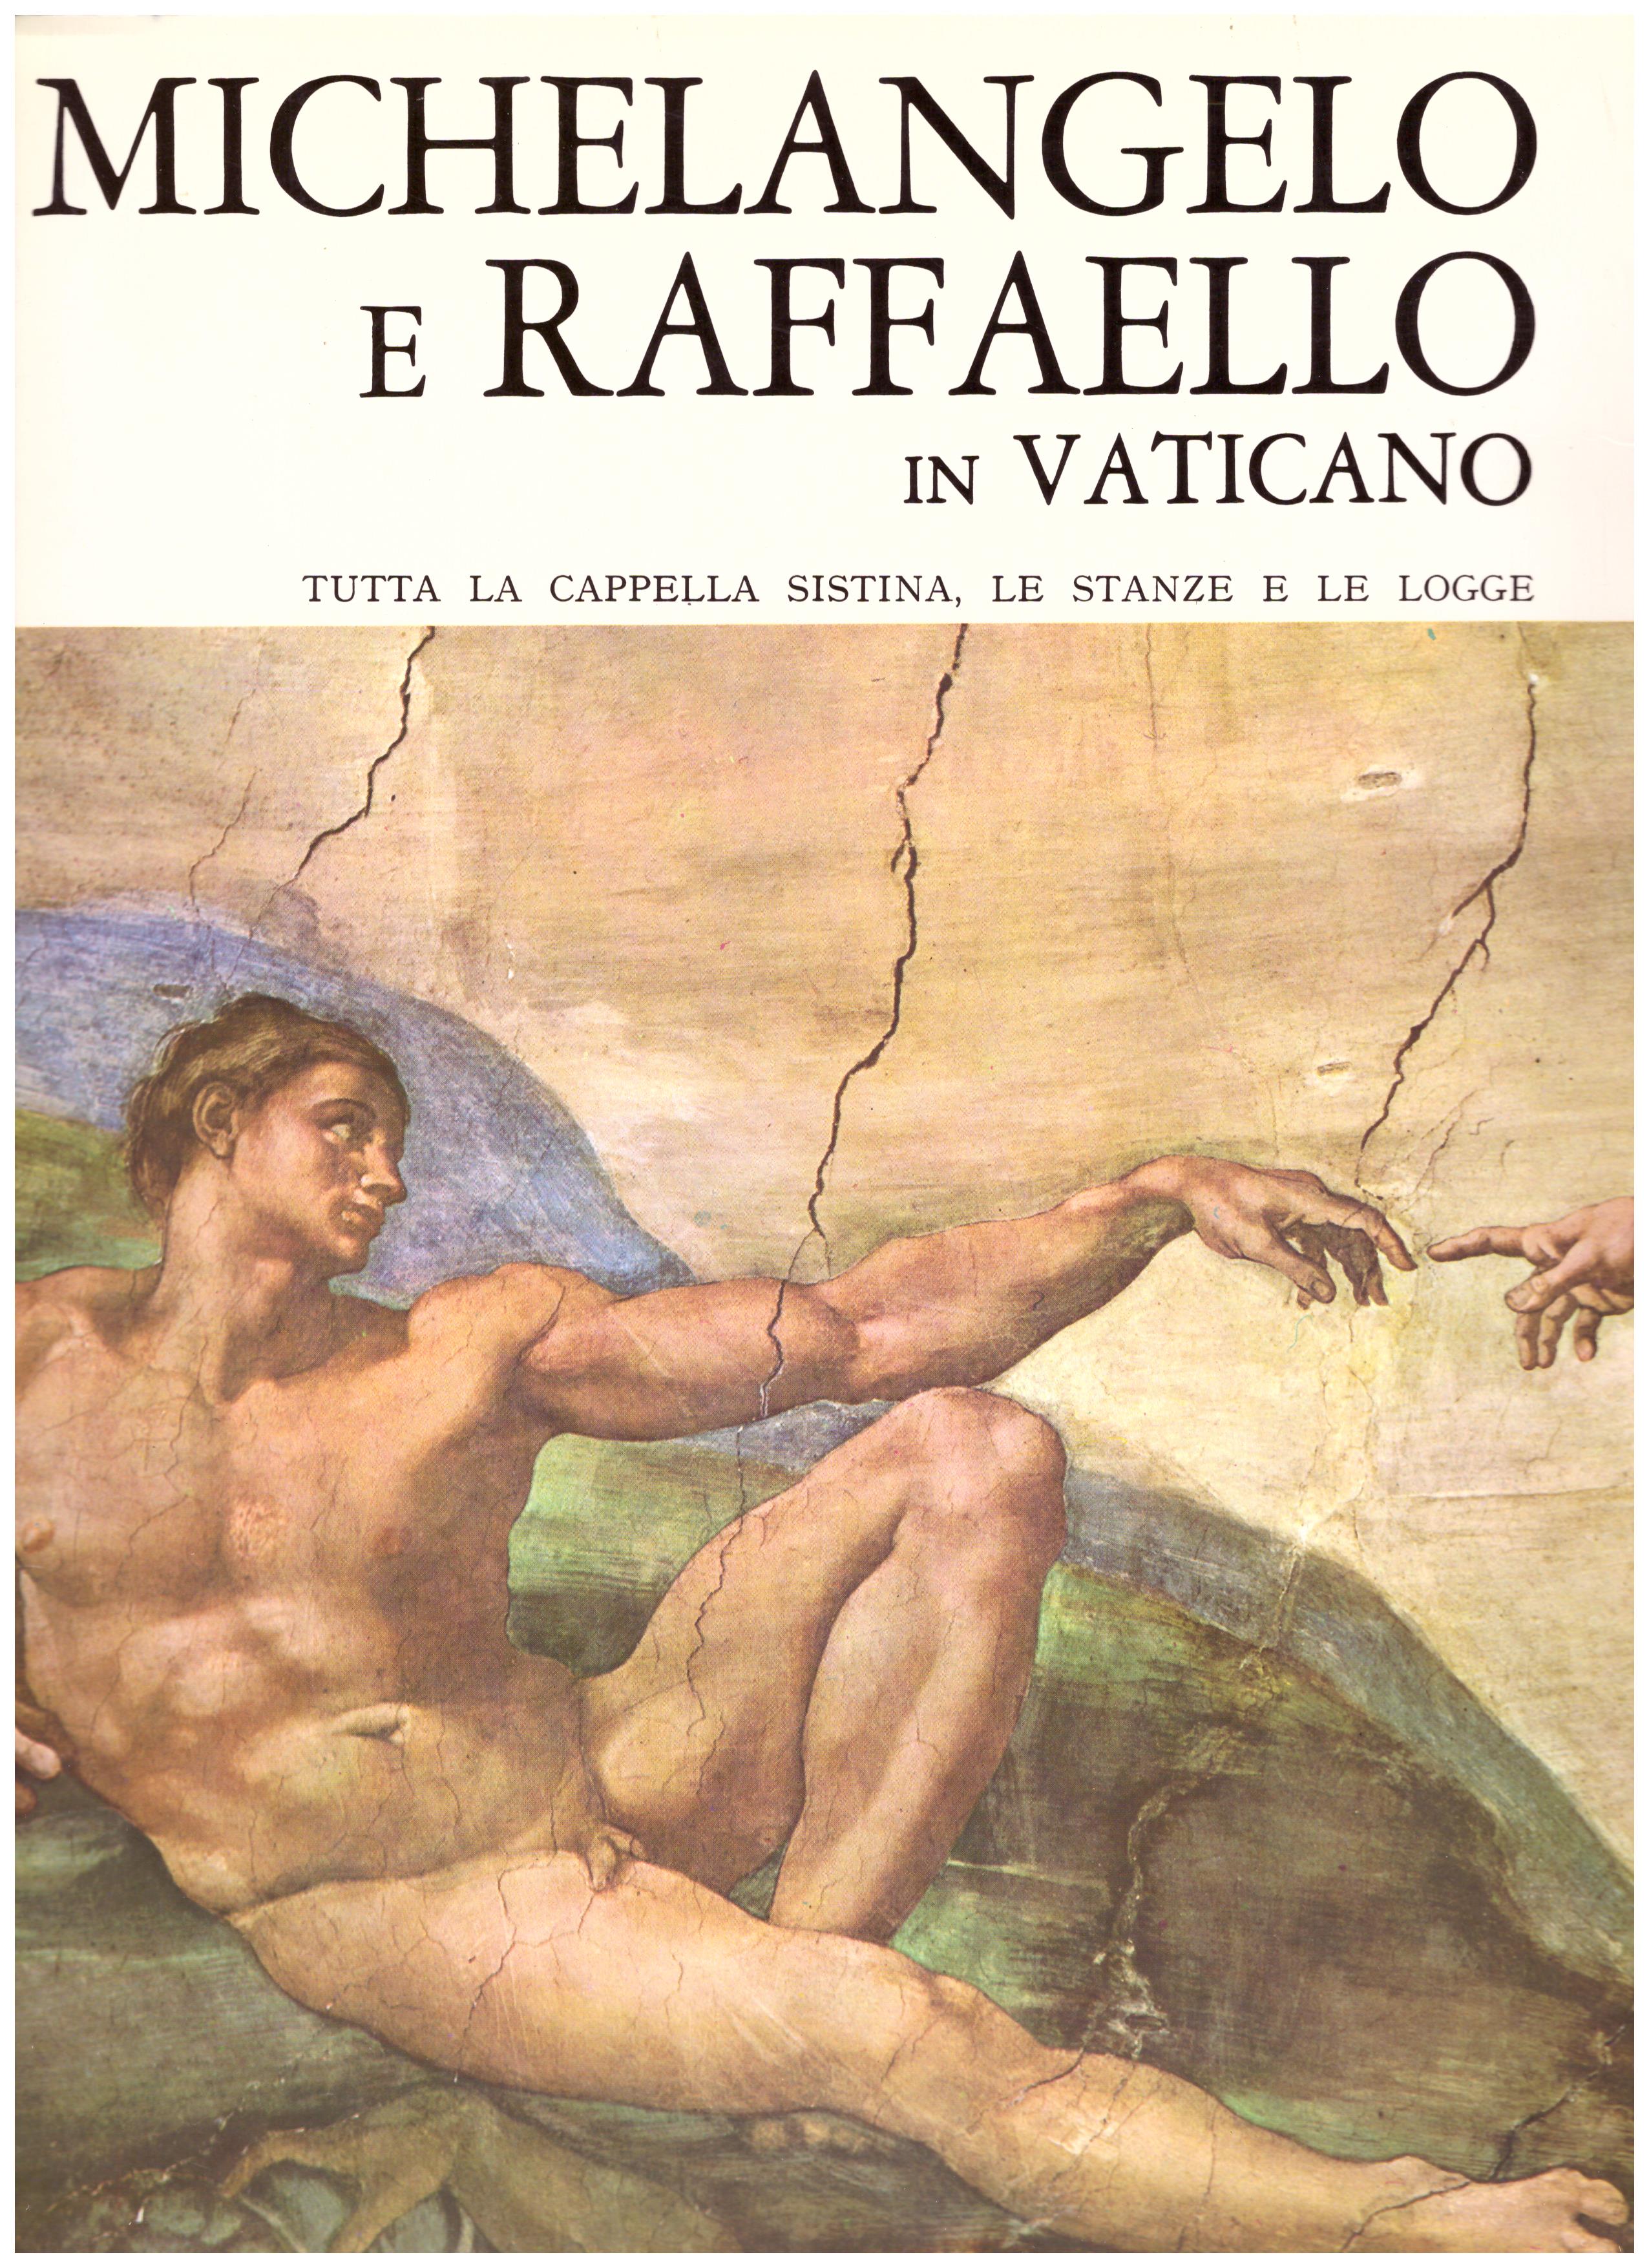 Titolo:Michelangelo e Raffaello in Vaticano, tutta la cappella sistina, le stanze e le logge     Autore: AA.VV.     Editore:Argalia Editore Urbino